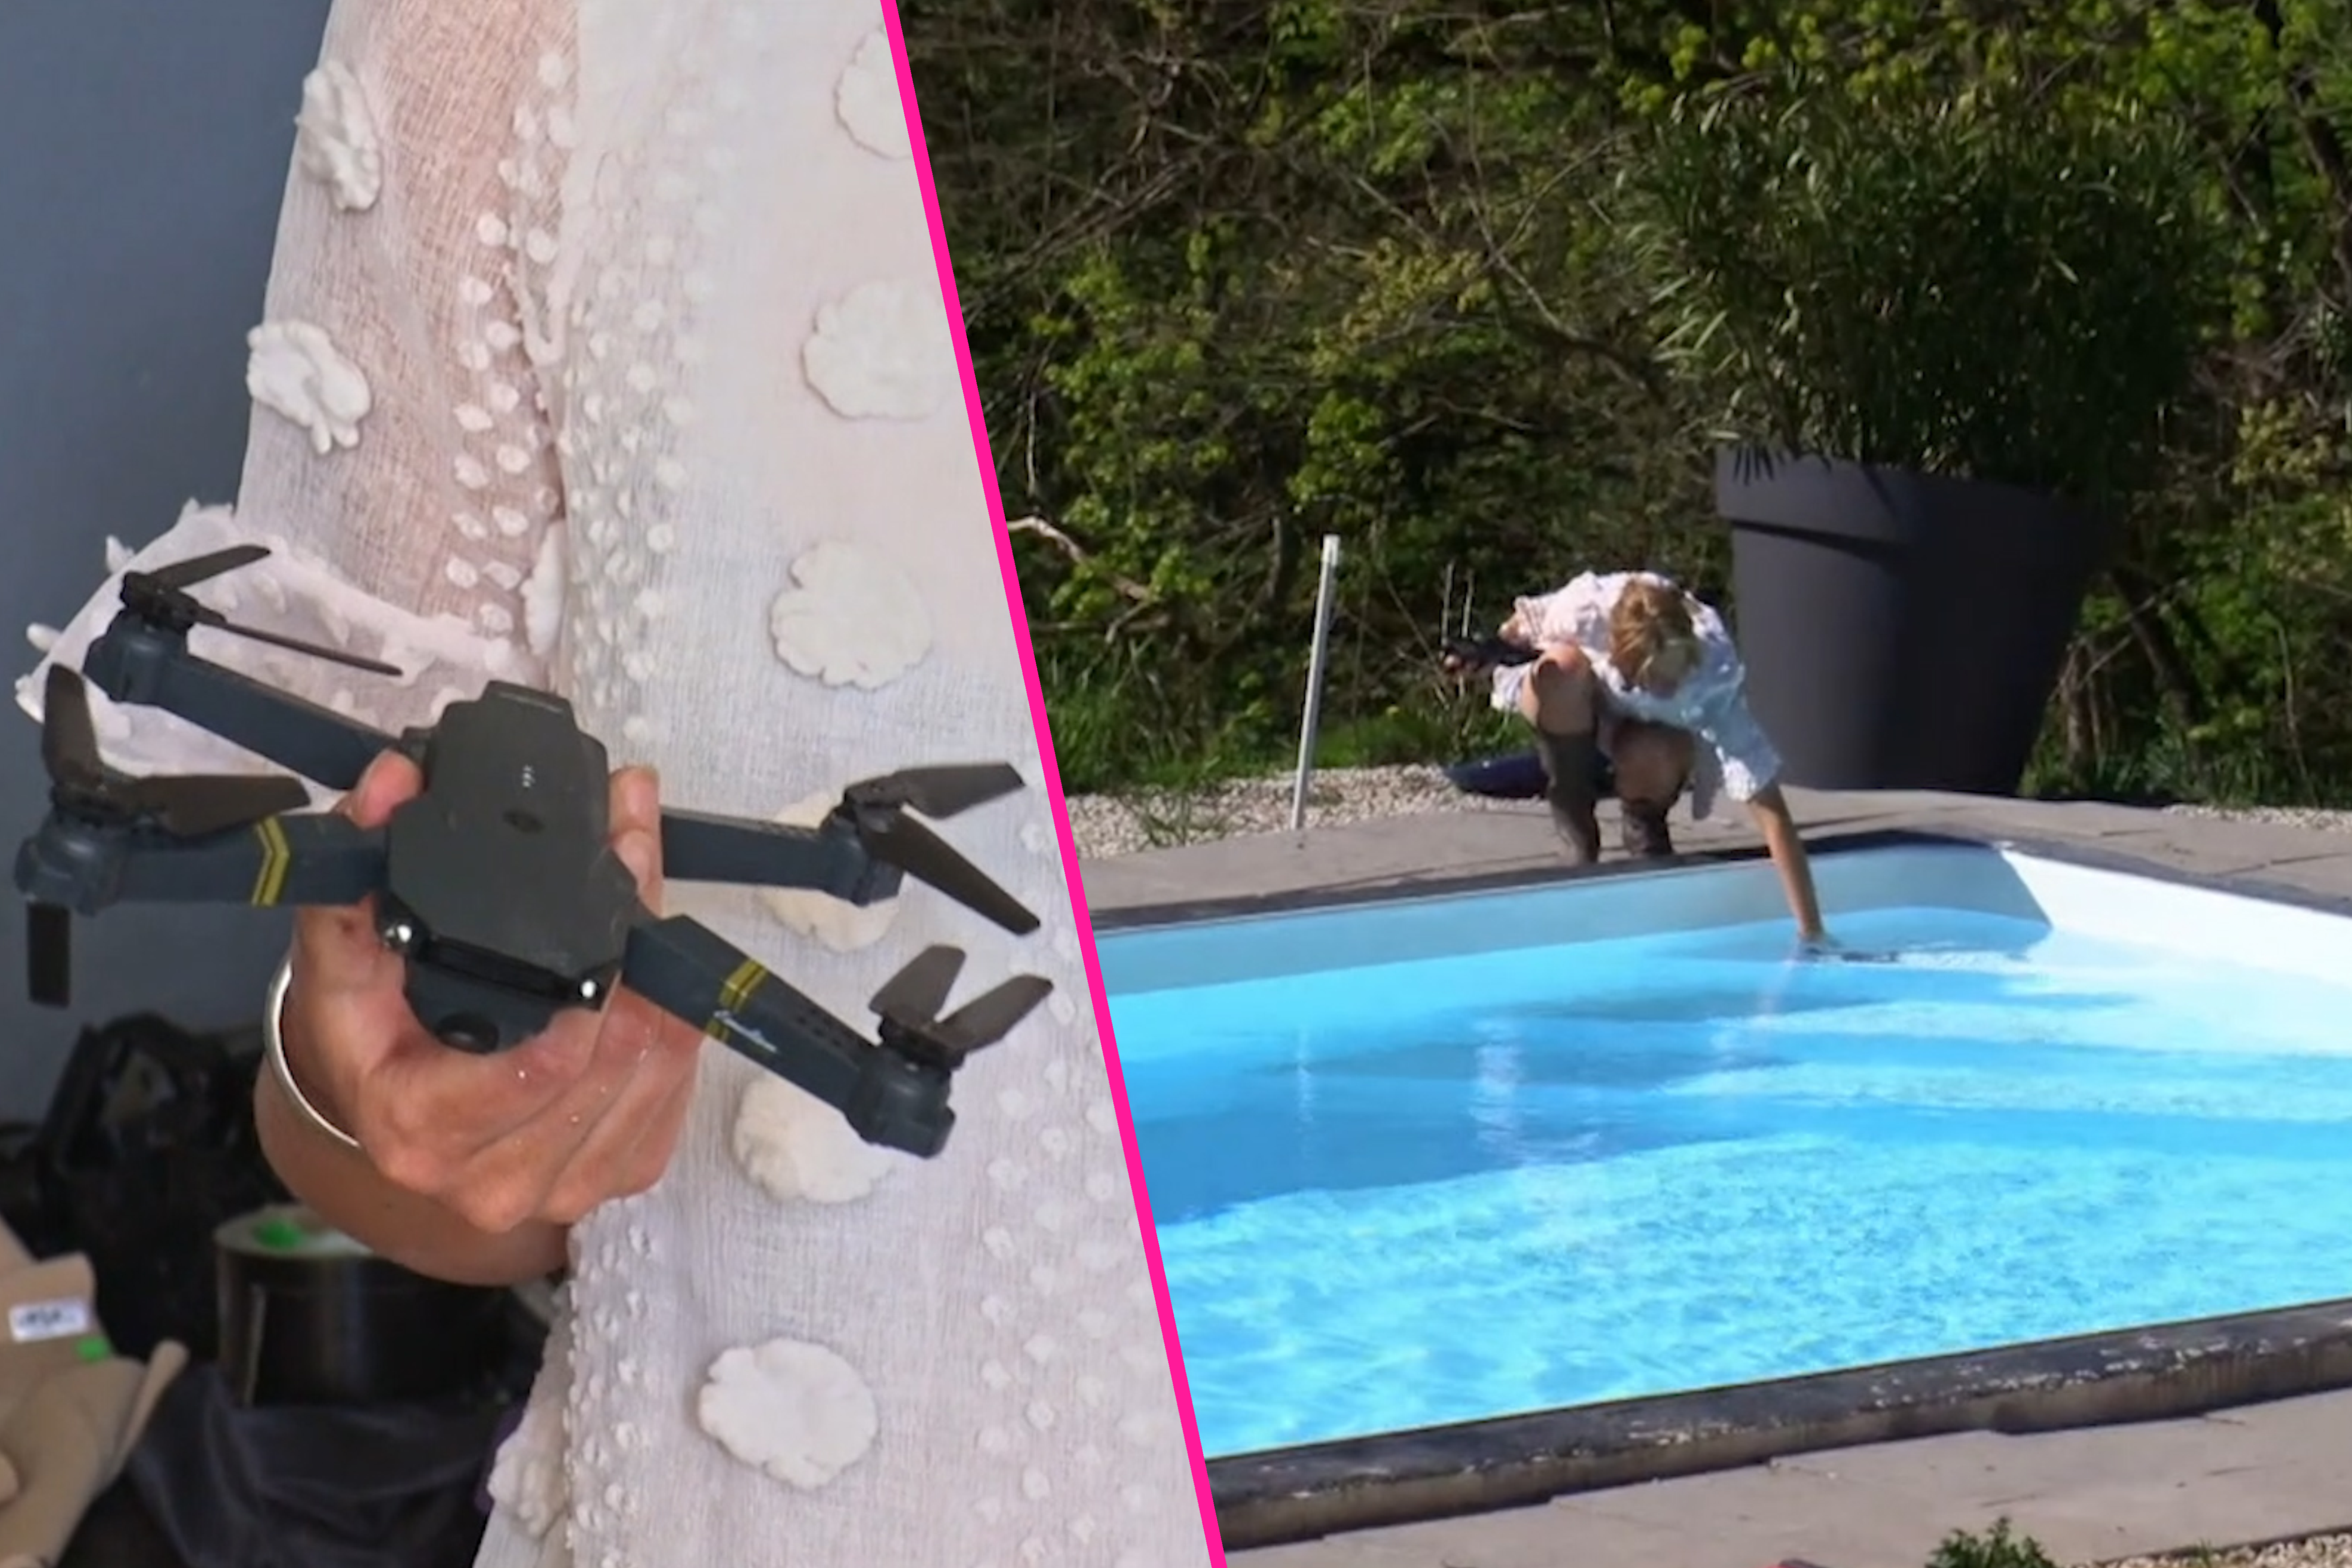 Maxime speelt drone tot tweemaal toe kwijt en vind hem terug... in het zwembad